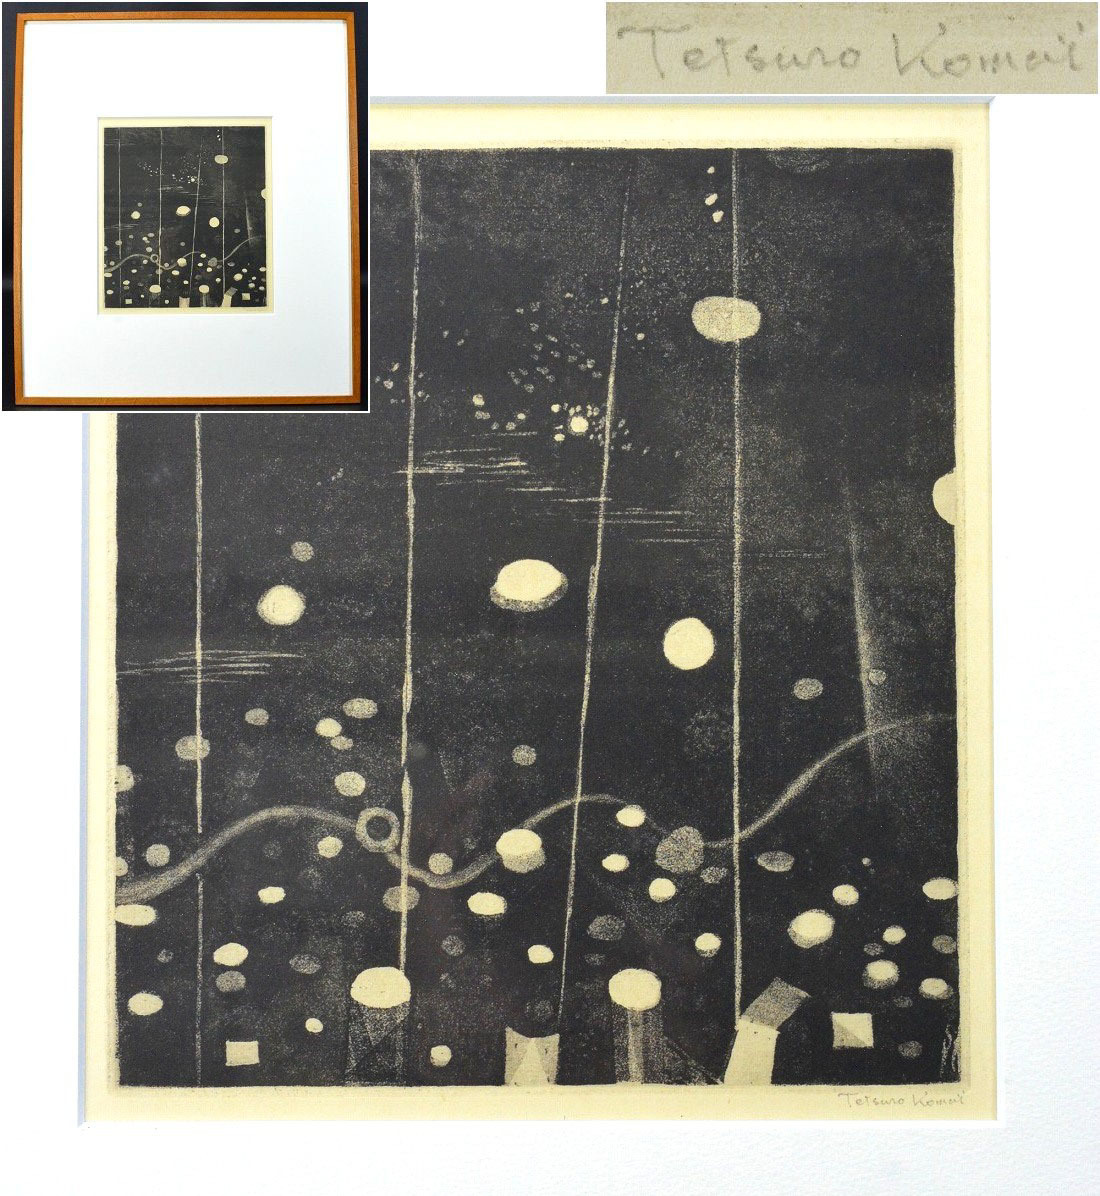 رائد المطبوعات النحاسية الحديثة [Tetsuro Komai] طباعة النحاسيات ``Piquet's Afterimage'' لوحة موقعة مؤطرة, عمل فني, مطبعة, طباعة لوحة نحاسية, النقش